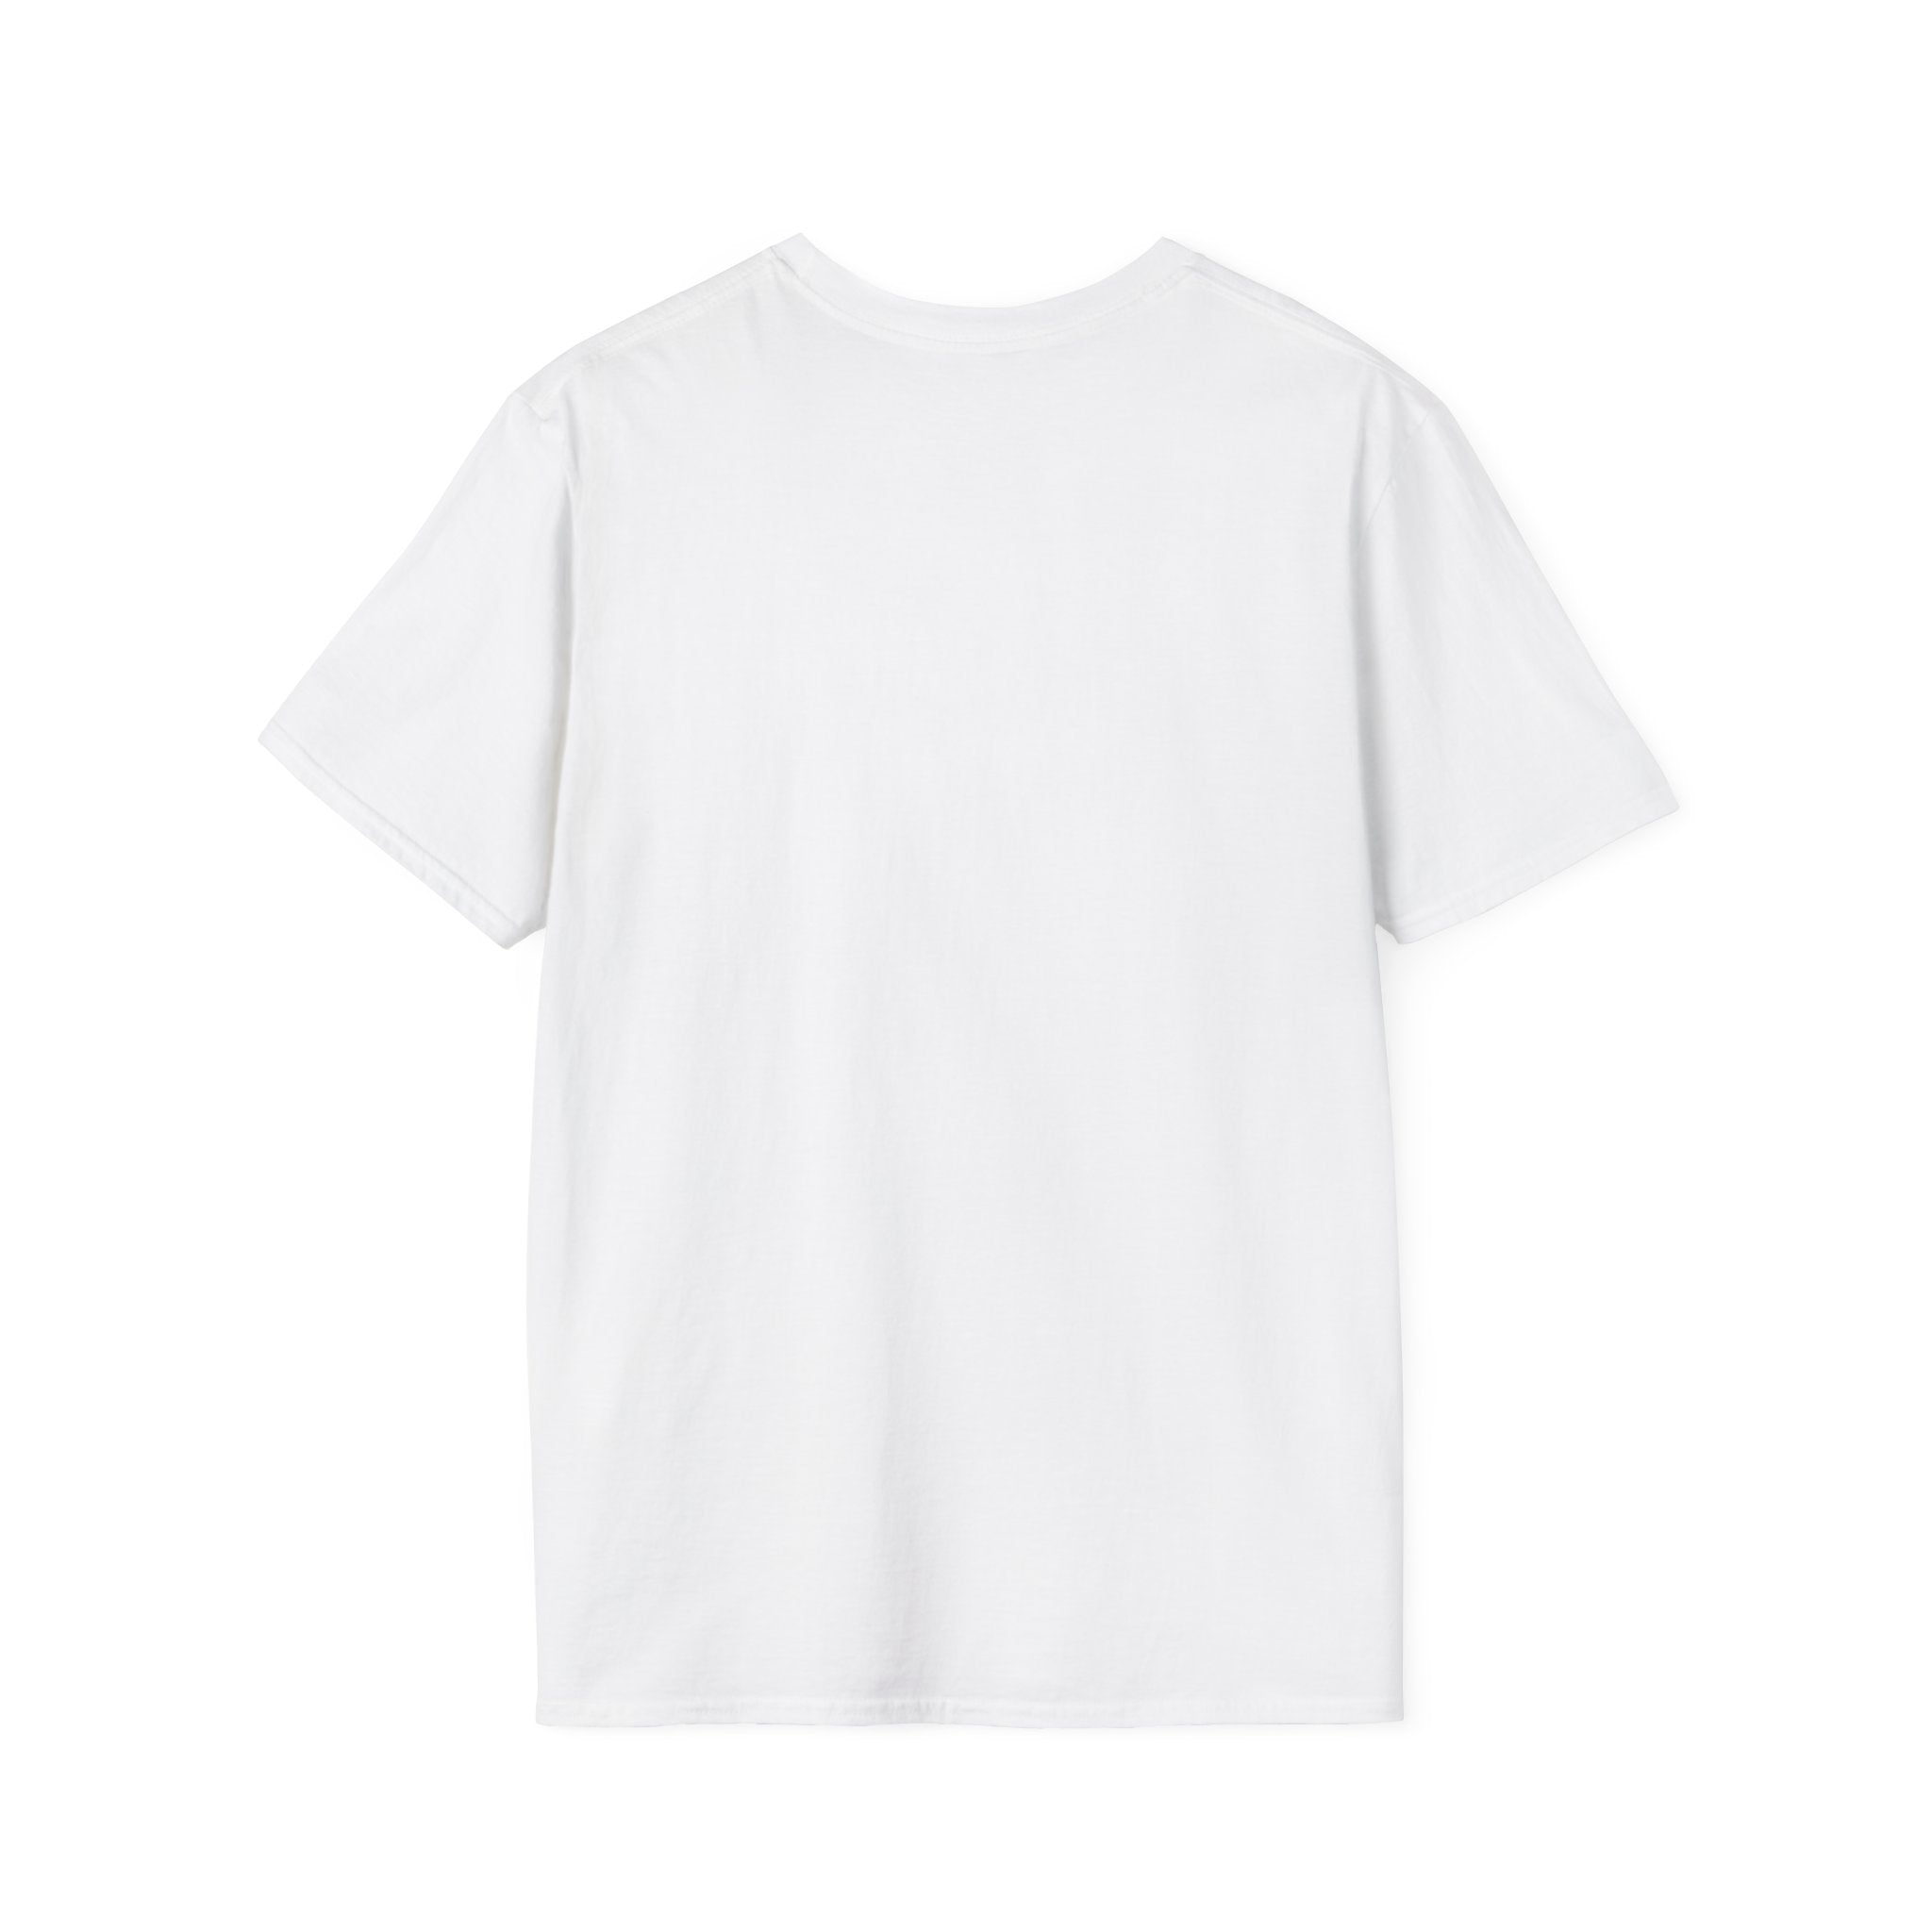 BEAR DRUMMER Unisex Softstyle T-Shirt